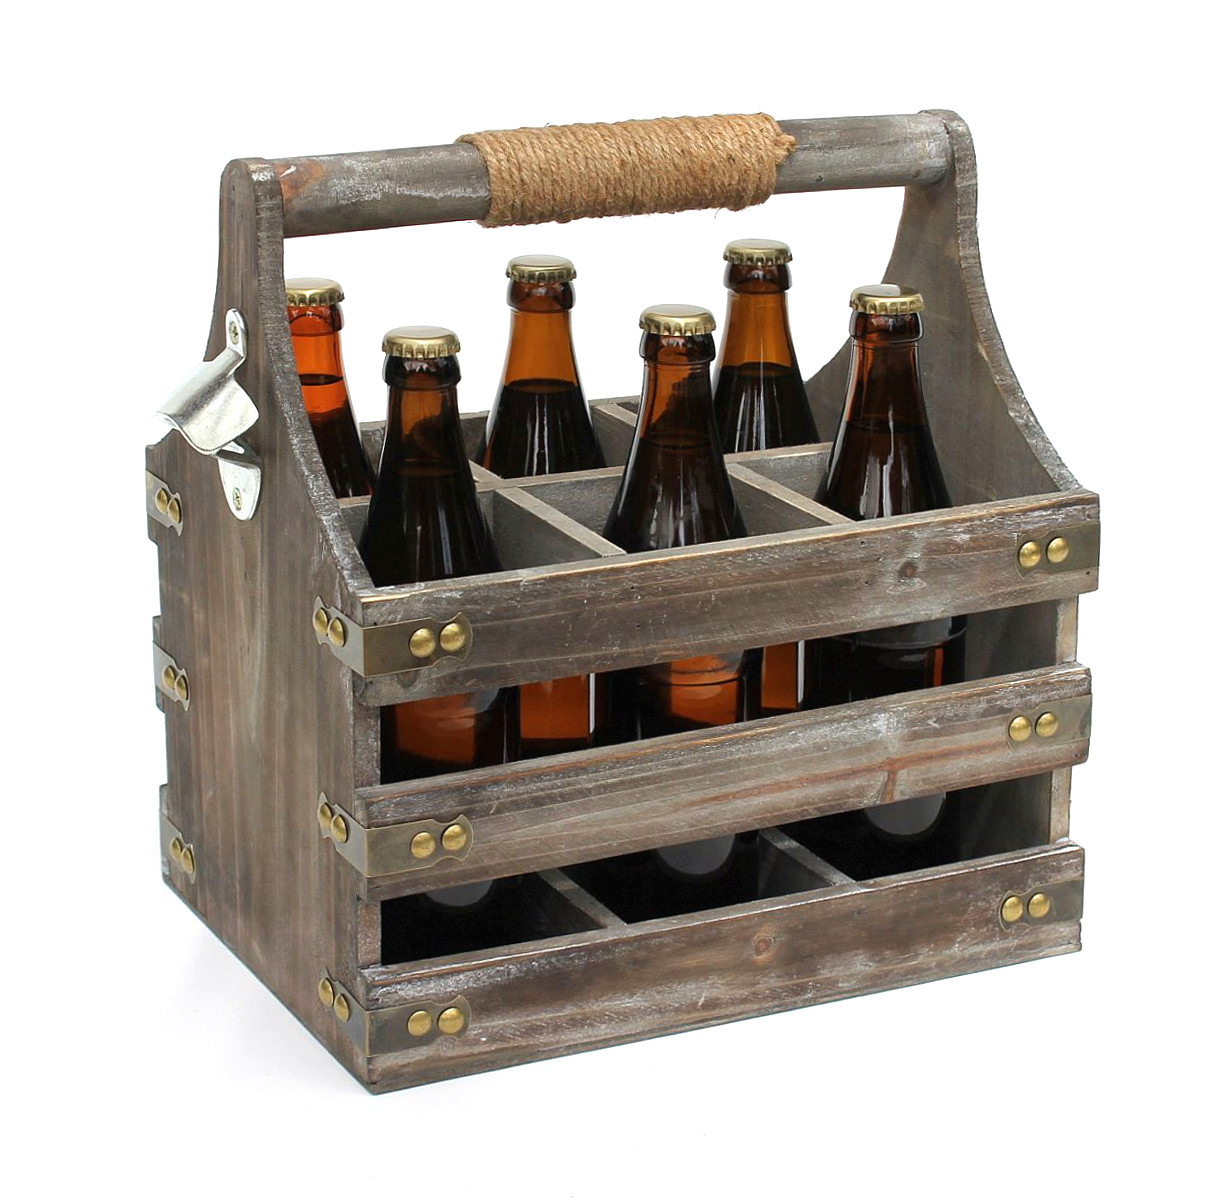 DanDiBo Bierträger aus Holz Öffner 93860 Flaschenöffner mit Flaschenträger Männergeschenke-DanDiBo Flaschenkorb Männerhandtasche